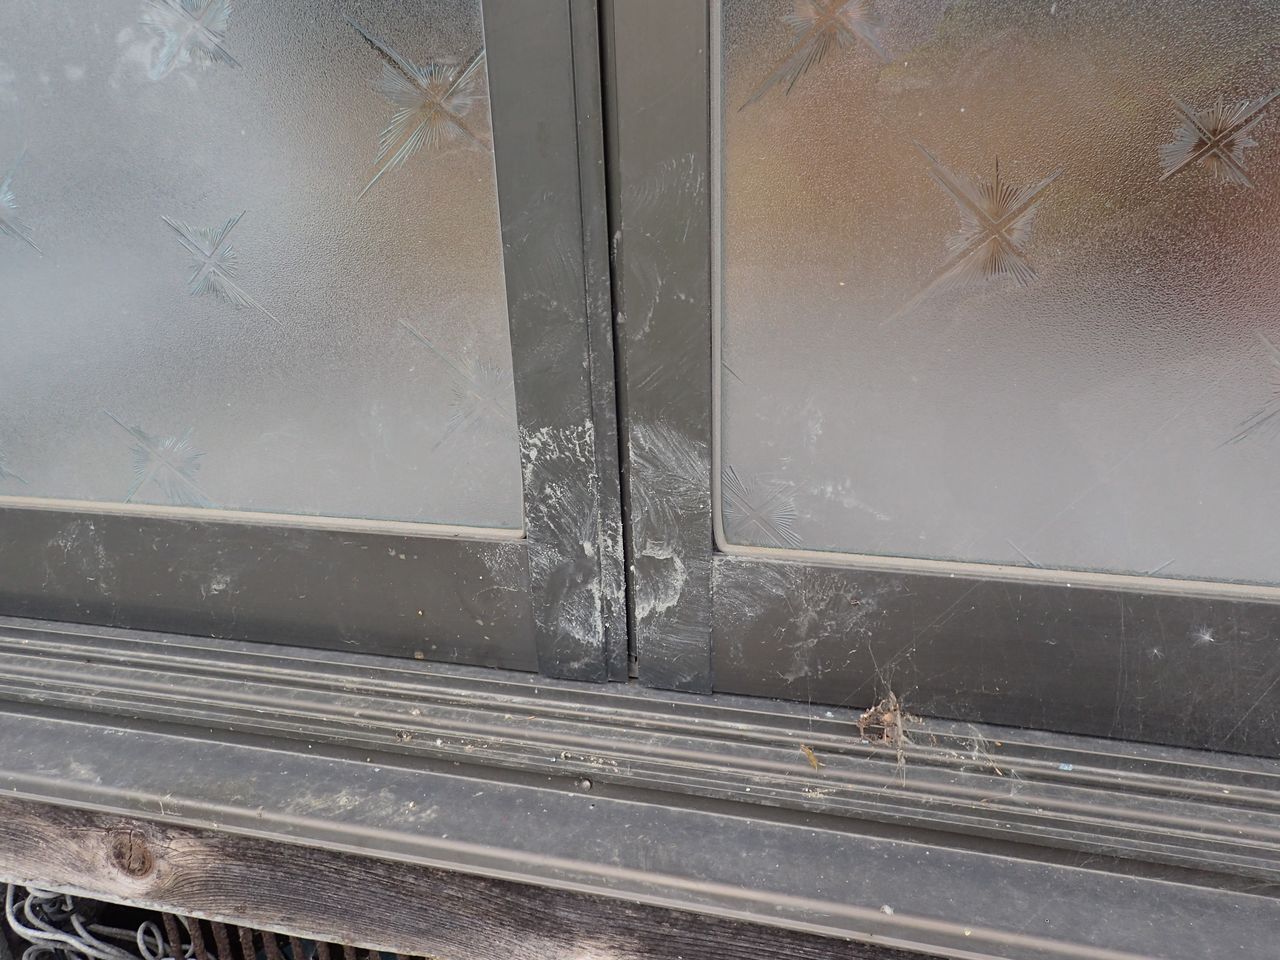 鼻を使って引き戸を開けようとしたイノシシの痕跡。戸の境に鼻をあてがった後、右側にスライドさせている。2017年5月、福島県内で撮影（筆者撮影）